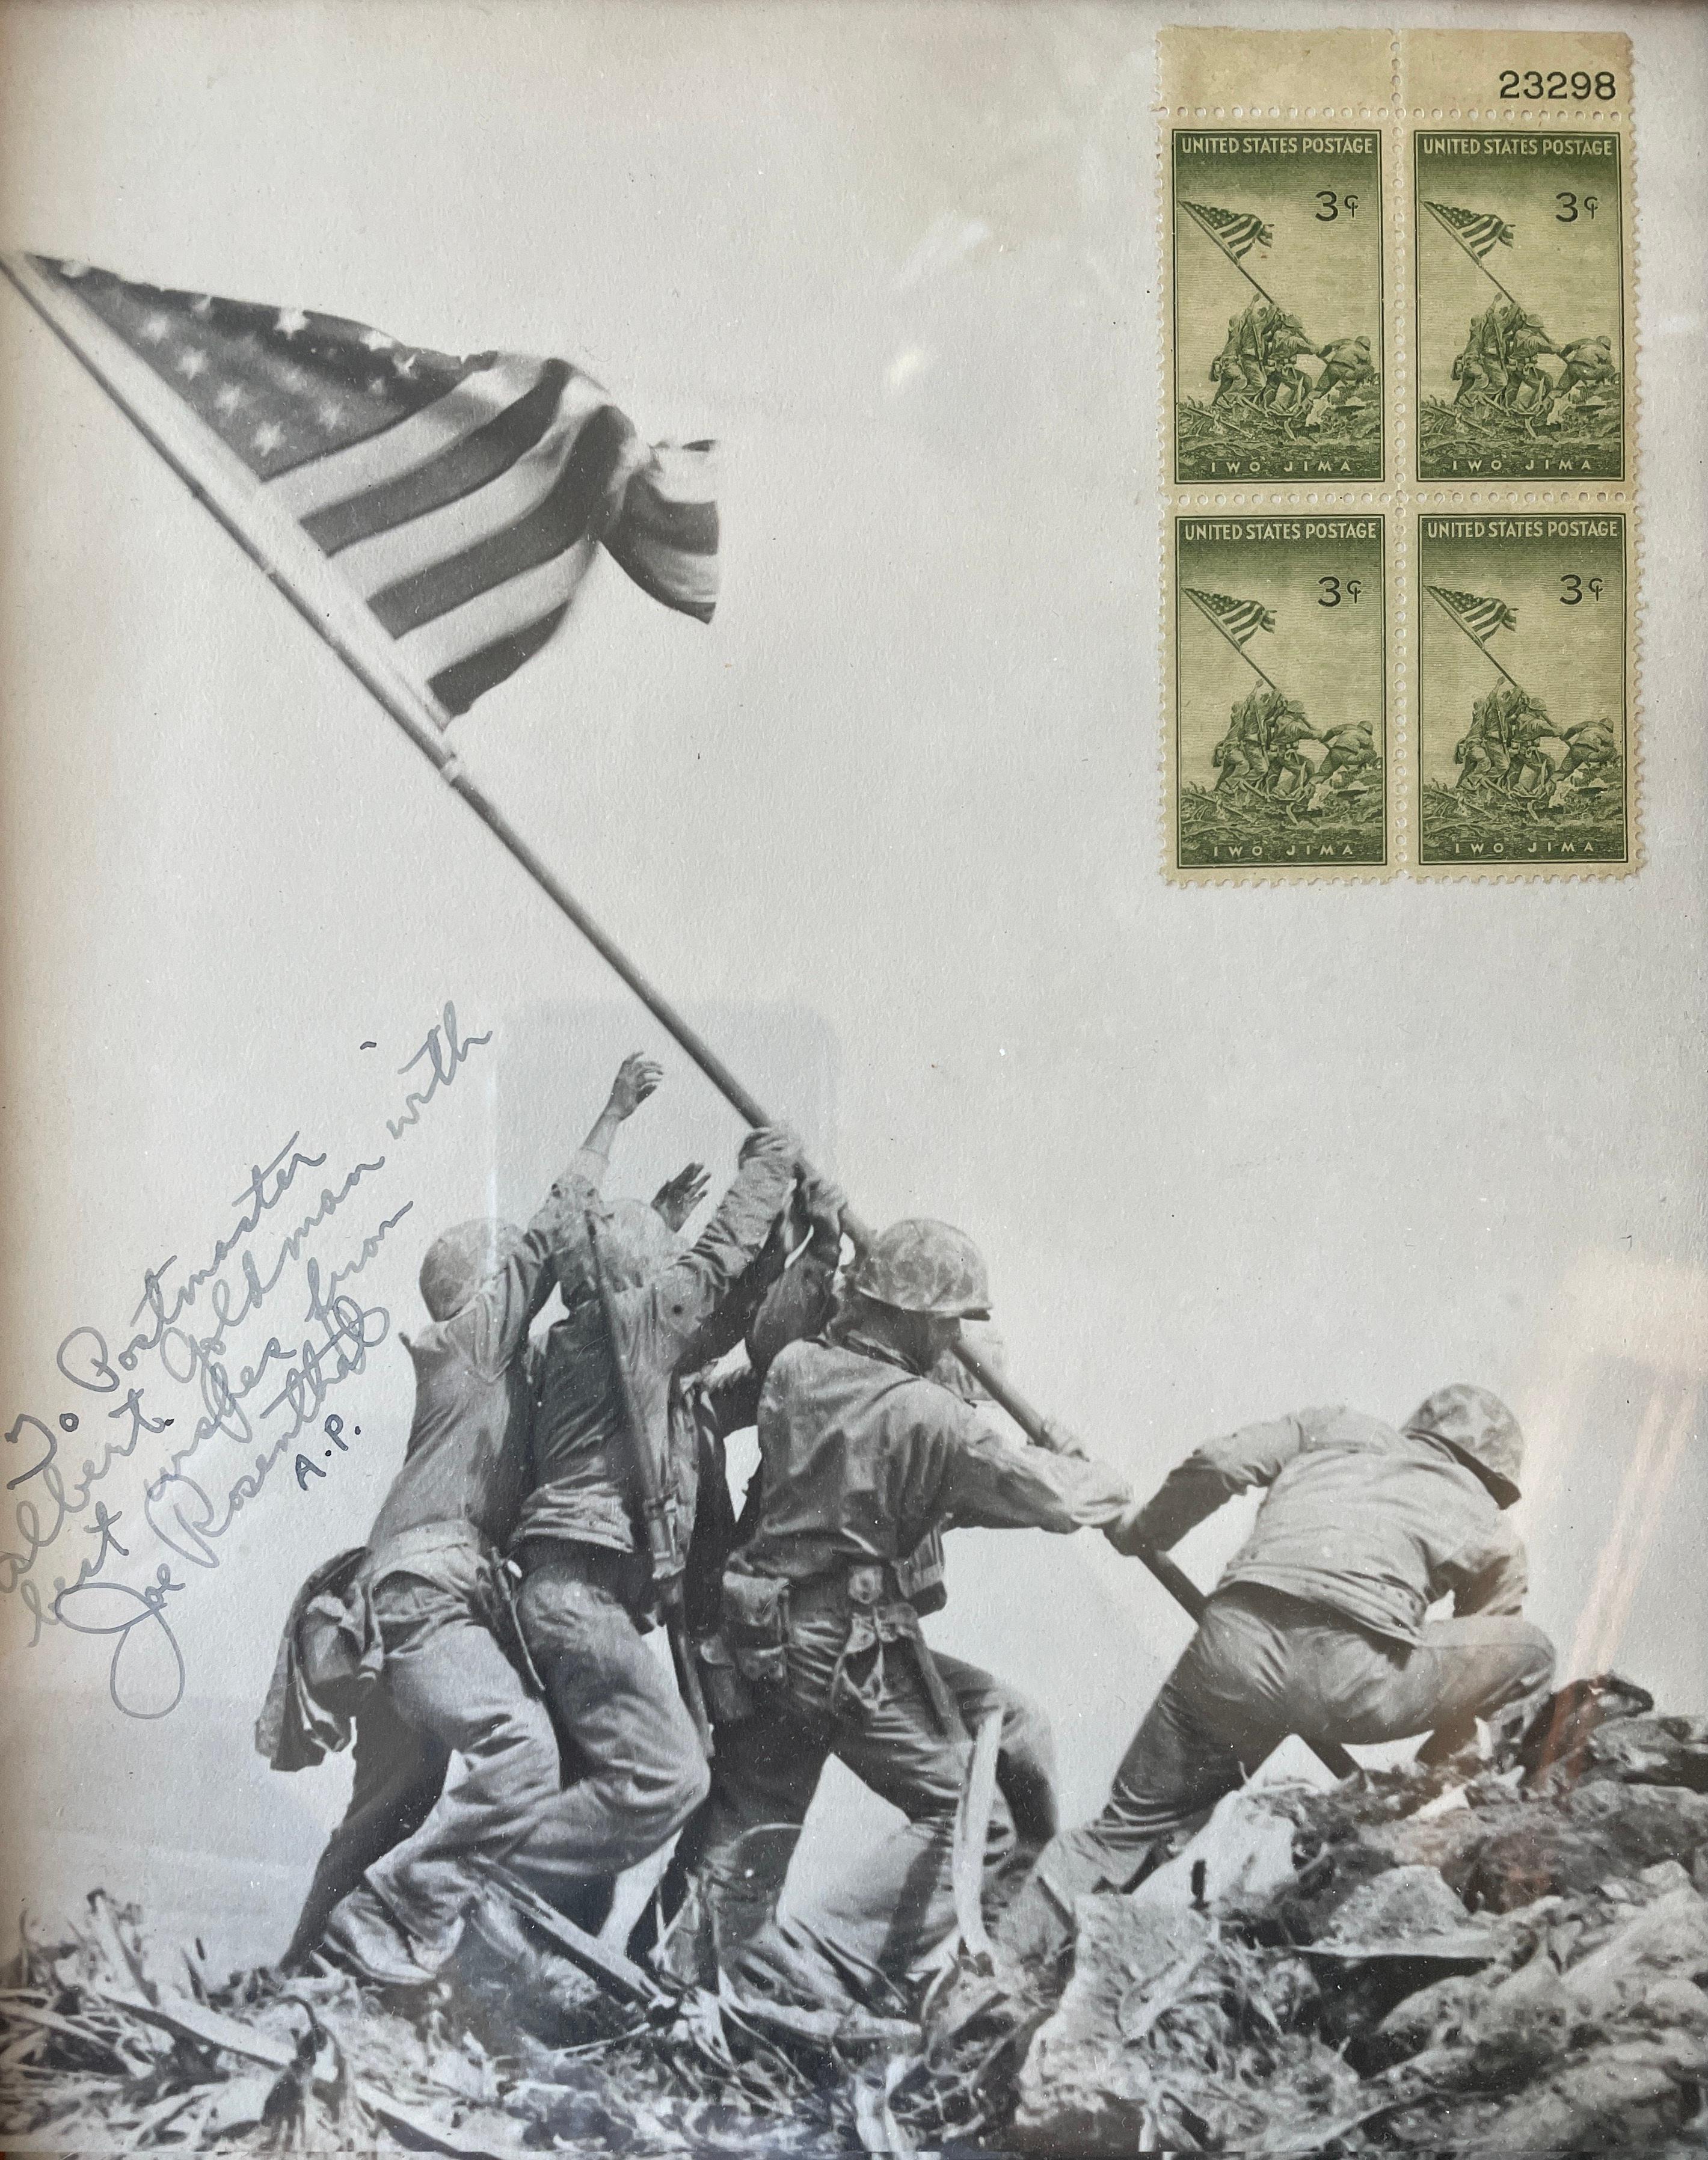 Joe Rosenthal Figurative Photograph – Signierte Flagge aufsteigen in Iwo Jima, 1945